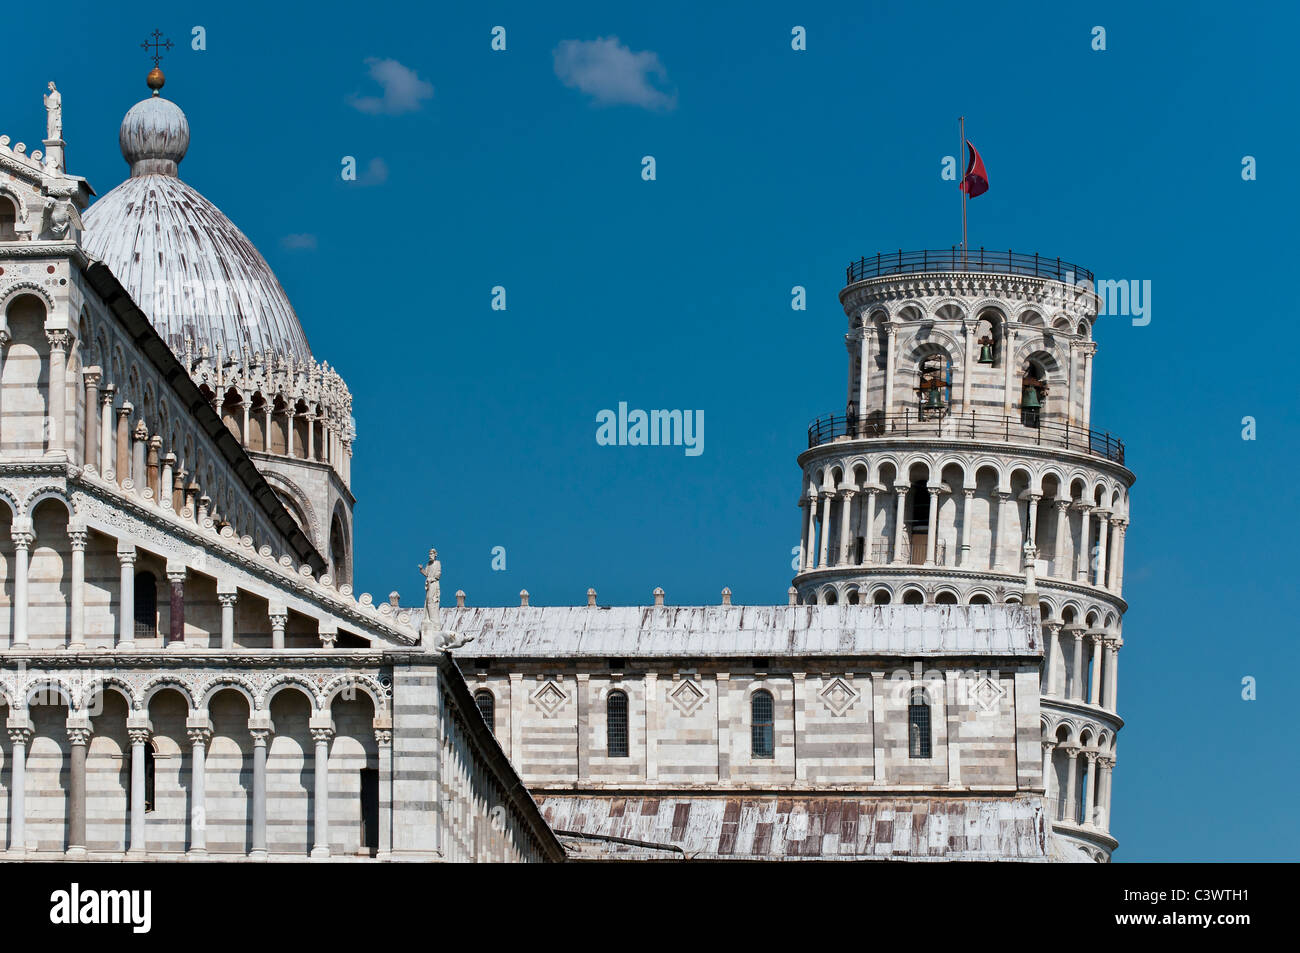 Vue sur la cathédrale et la Tour de Pise, la Piazza del Duomo (Place de la cathédrale), Pise, Toscane, Italie Banque D'Images